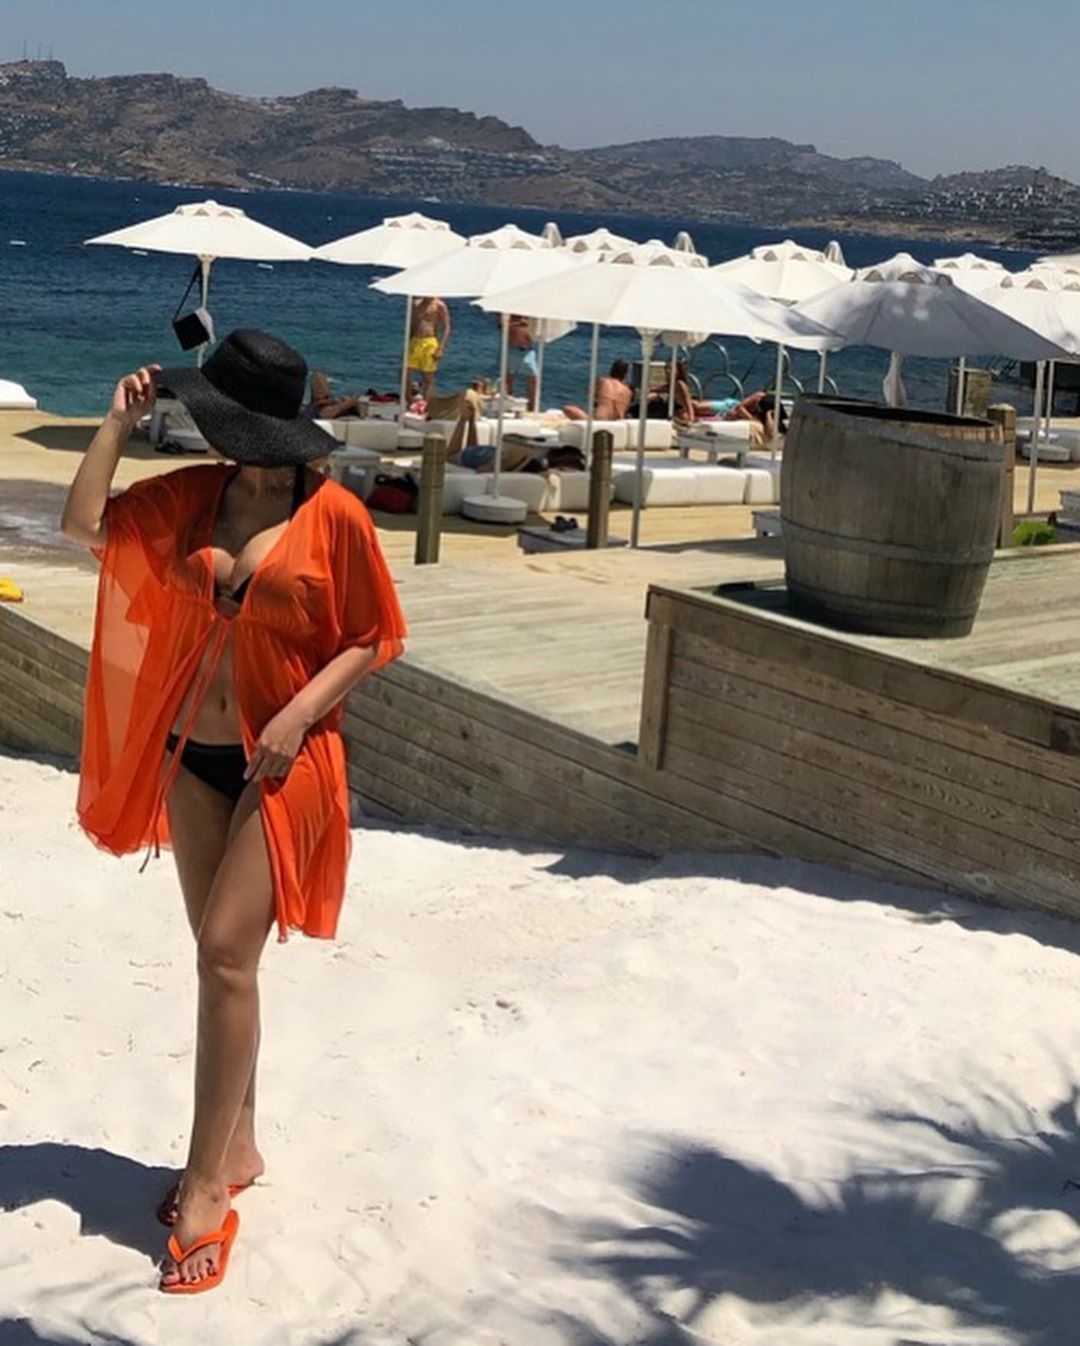 Nura Suri bikinidə - 43 yaşlı ifaçı qüsursuz bədənilə heyran etdi - FOTO